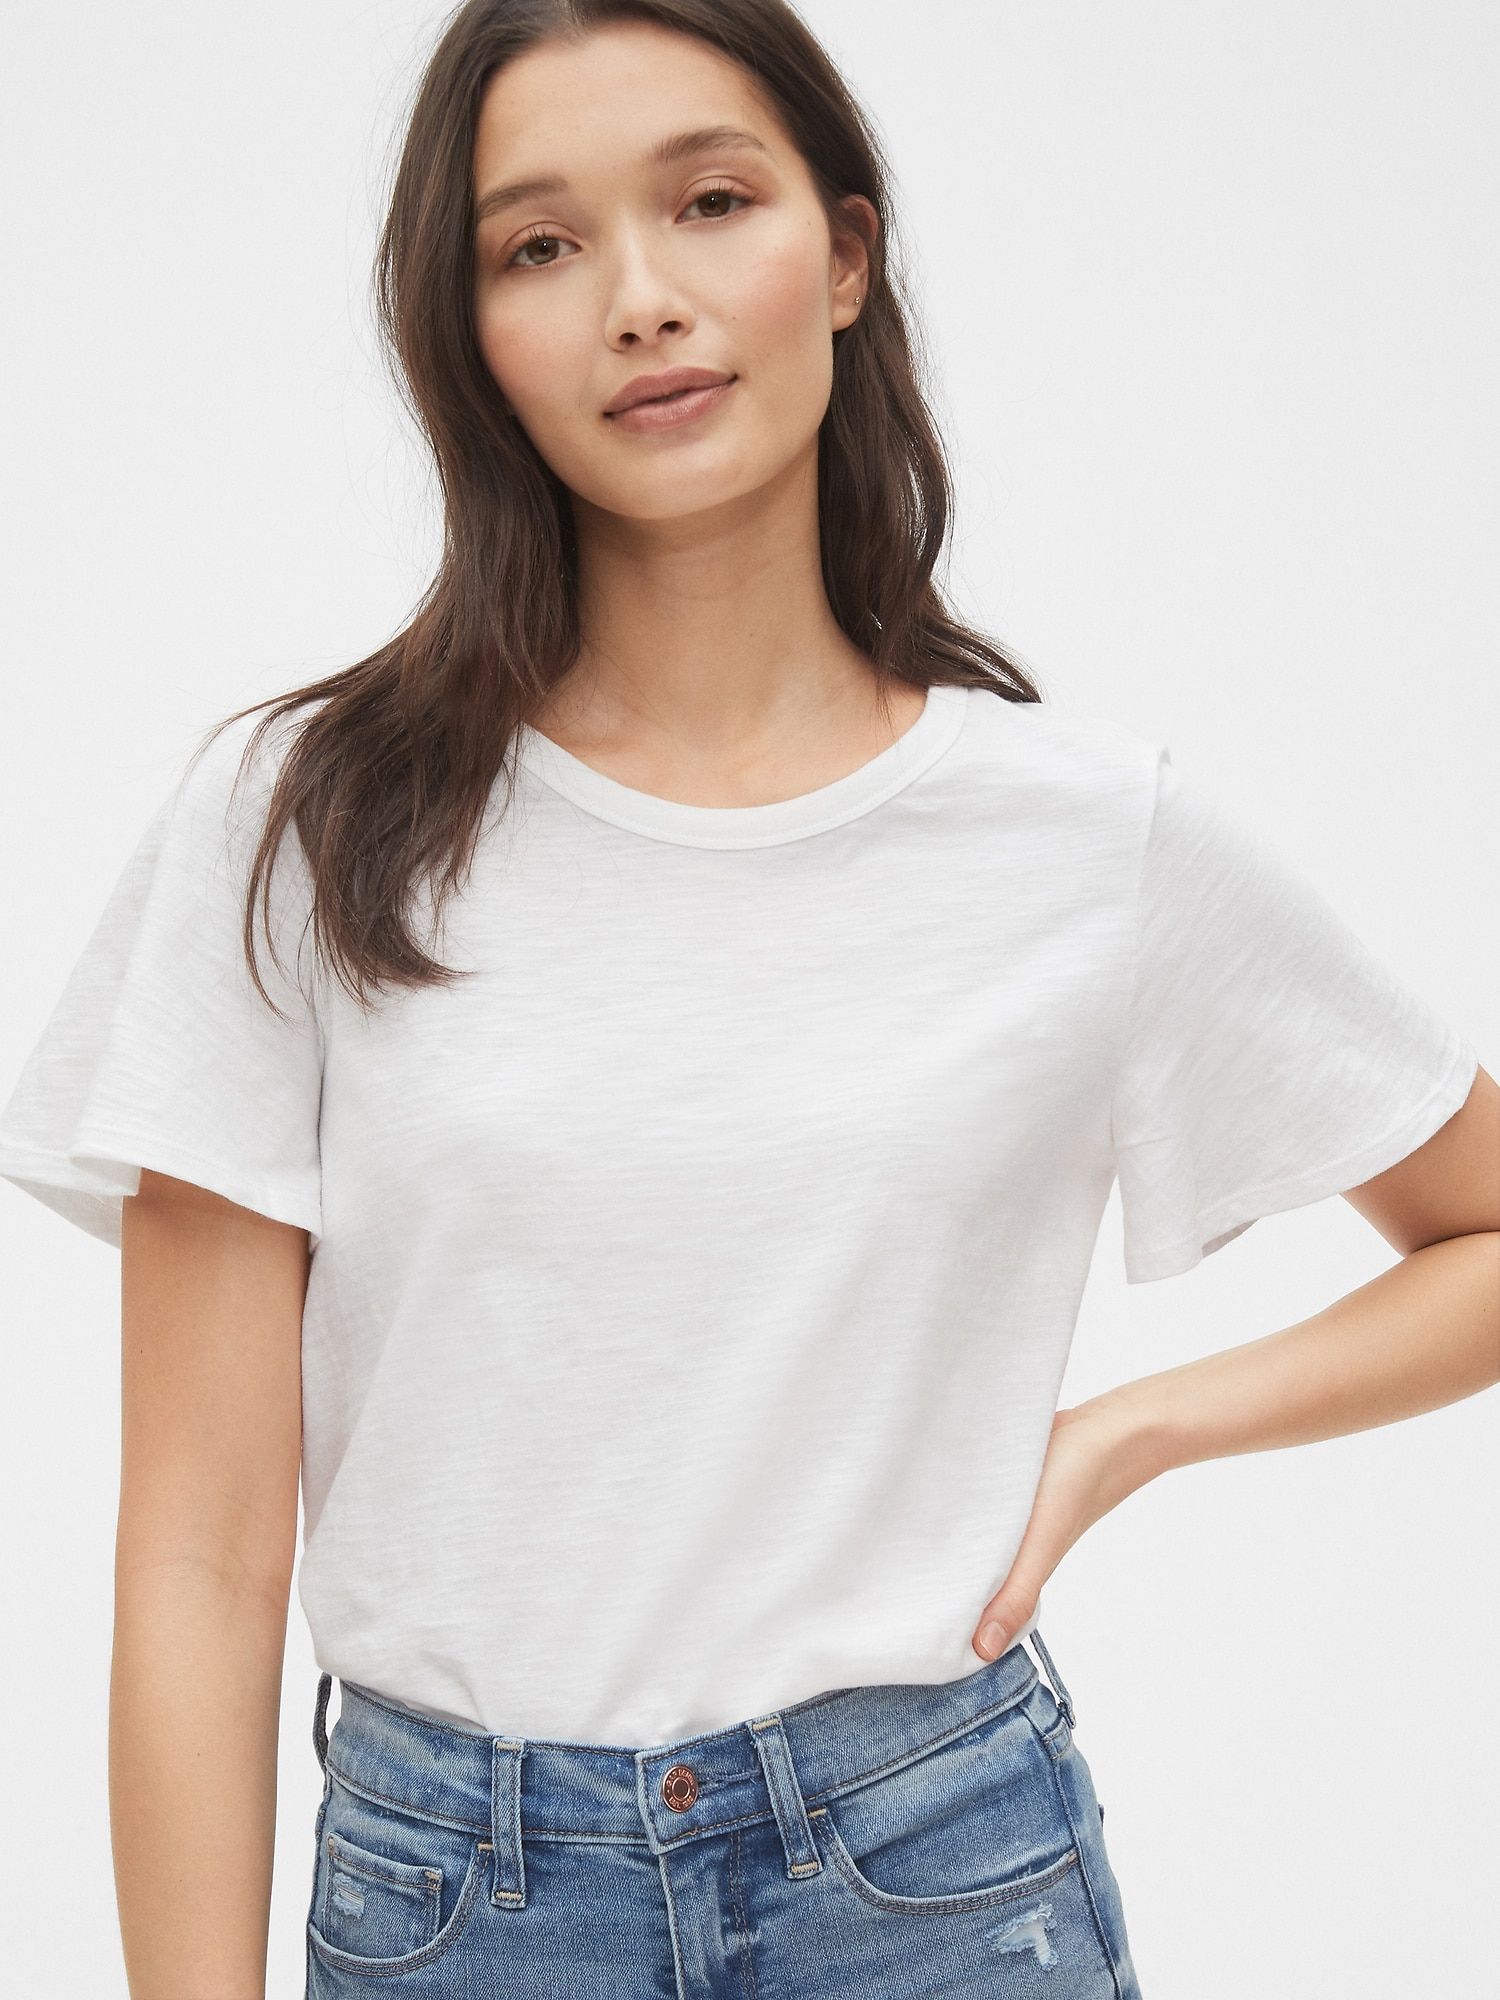 plain white shirt for girl